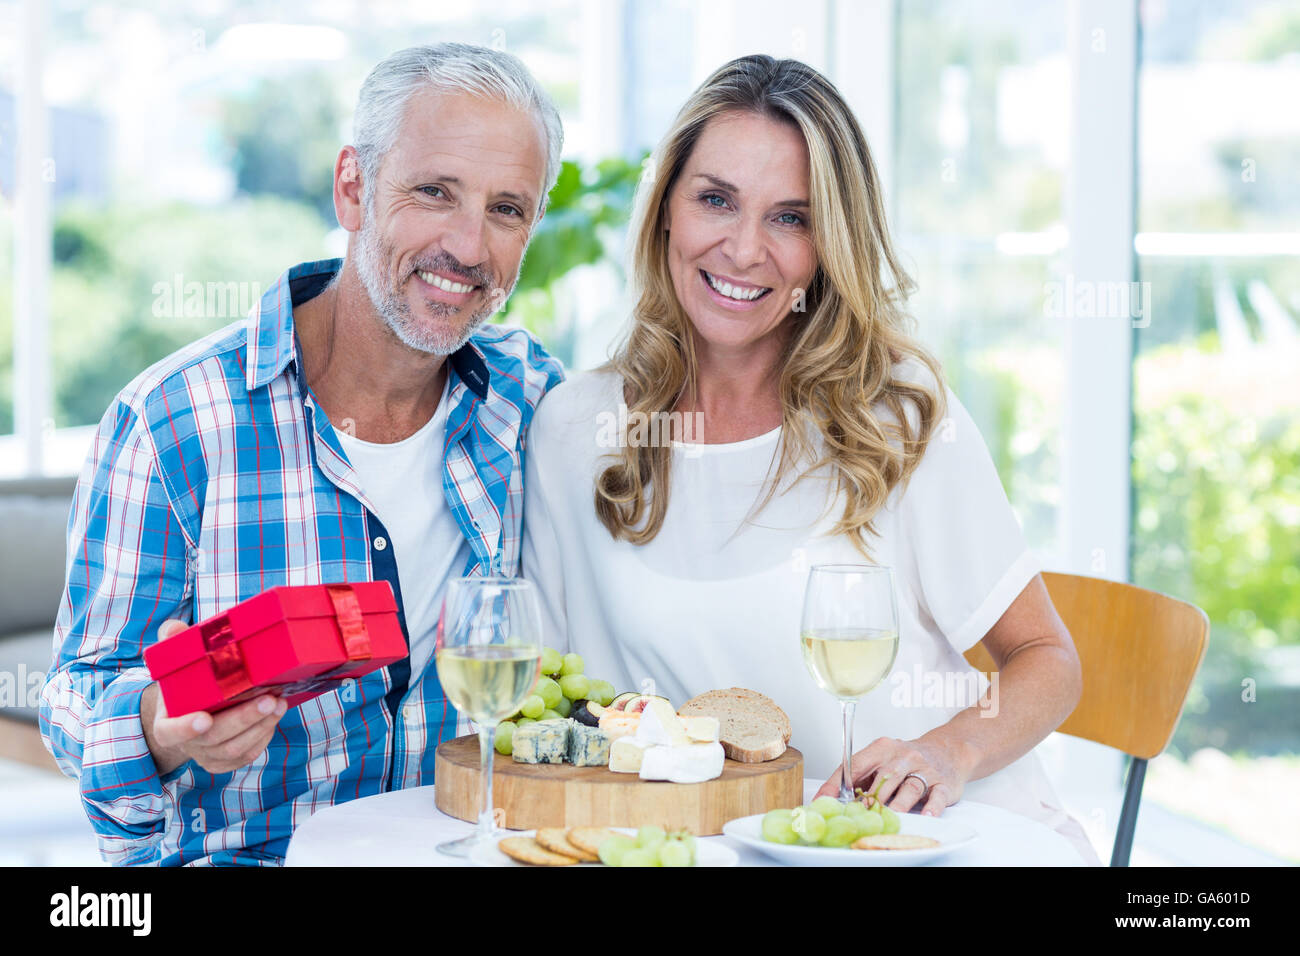 Reifer Mann halten Geschenk beim sitzen neben Frau Stockfoto